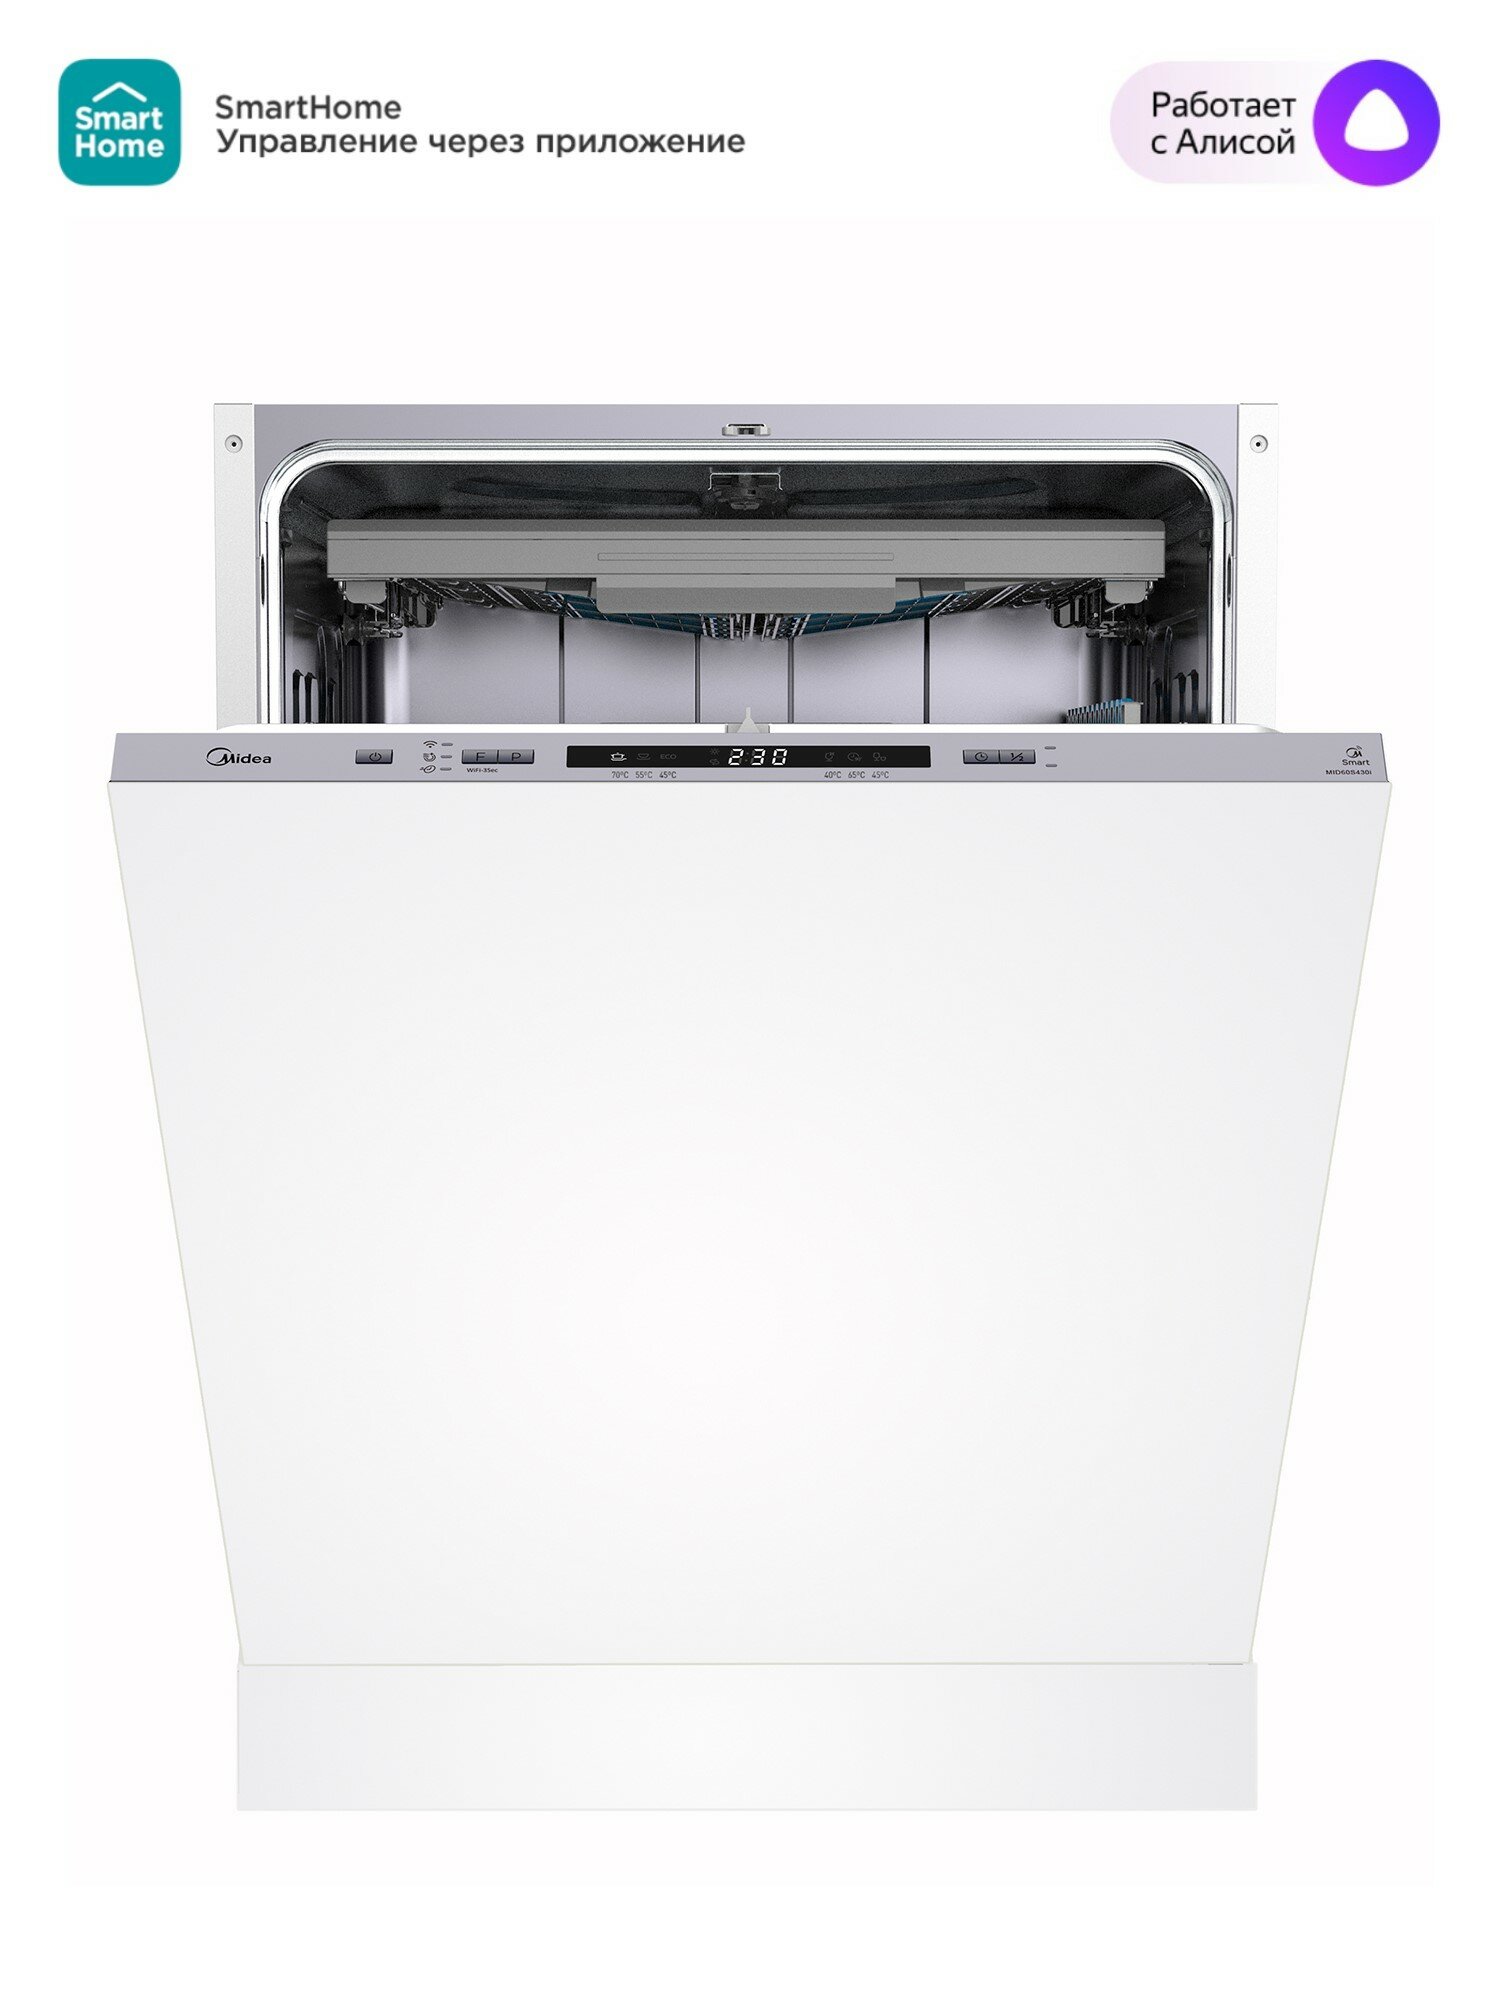 Встраиваемая посудомоечная машина с Wi-Fi Midea MID60S430i